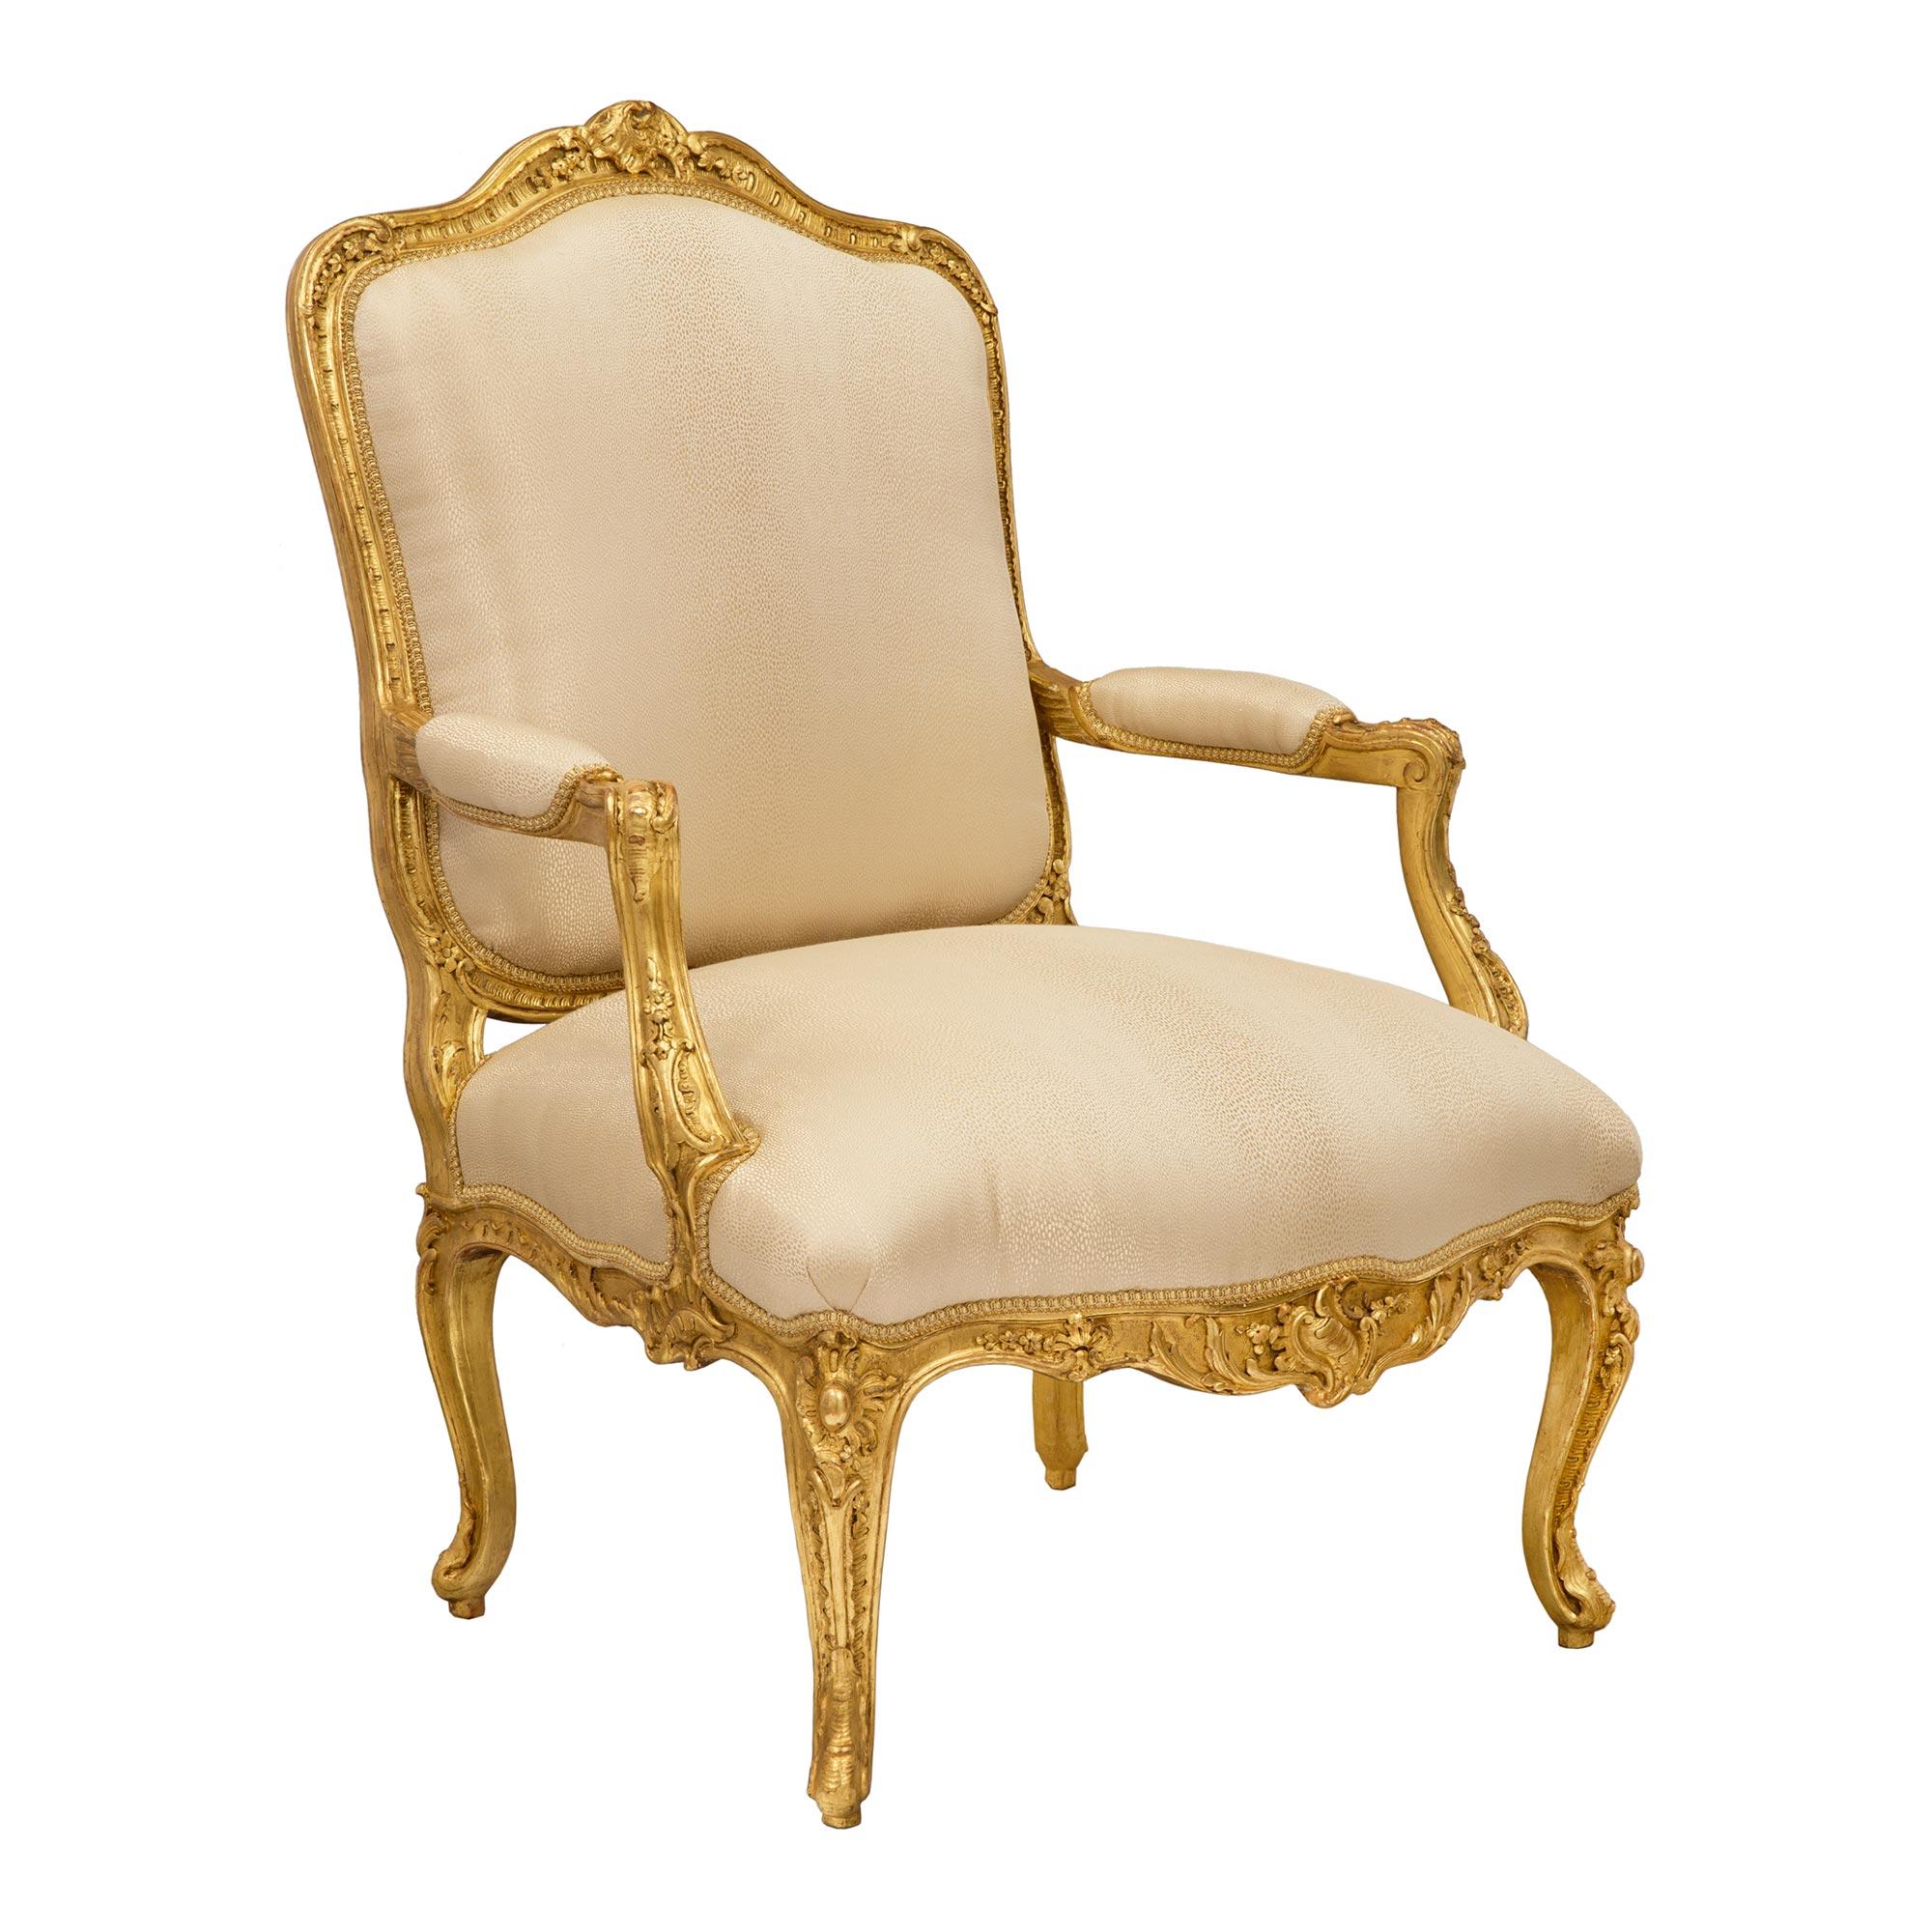 Une superbe paire de fauteuils français du 19ème siècle en bois doré de style Louis XV. Chaque chaise est surélevée par d'élégants pieds cabriole décorés de détails feuillagés richement sculptés. La frise en forme d'arbalète est centrée par de